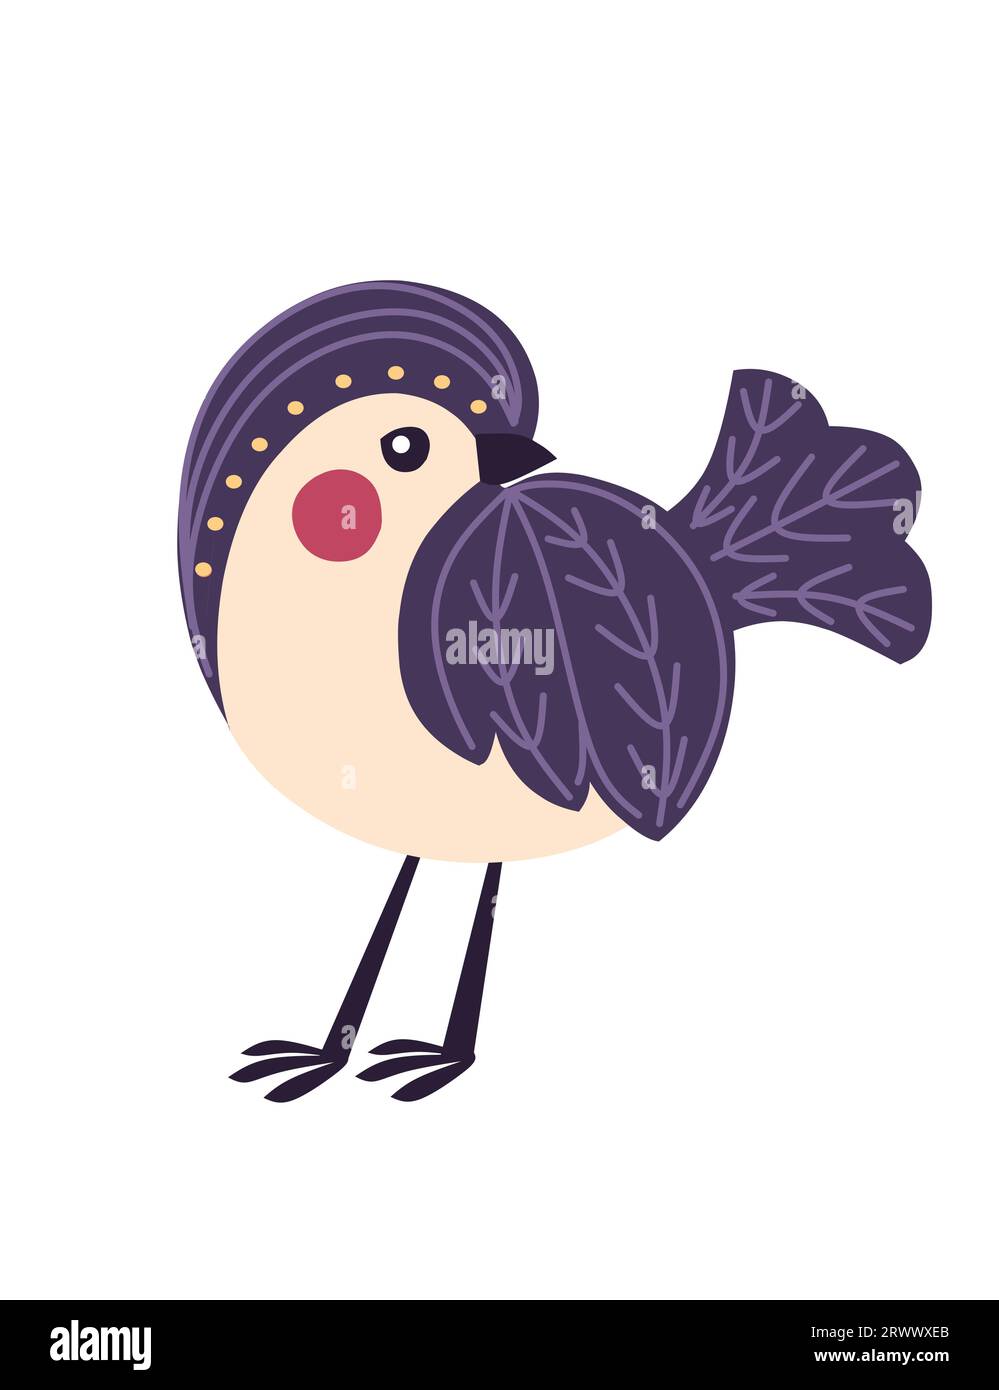 Petit oiseau de bande dessinée stylisé avec motif violet illustration vectorielle mignonne de conception d'animaux isolé sur fond blanc Illustration de Vecteur